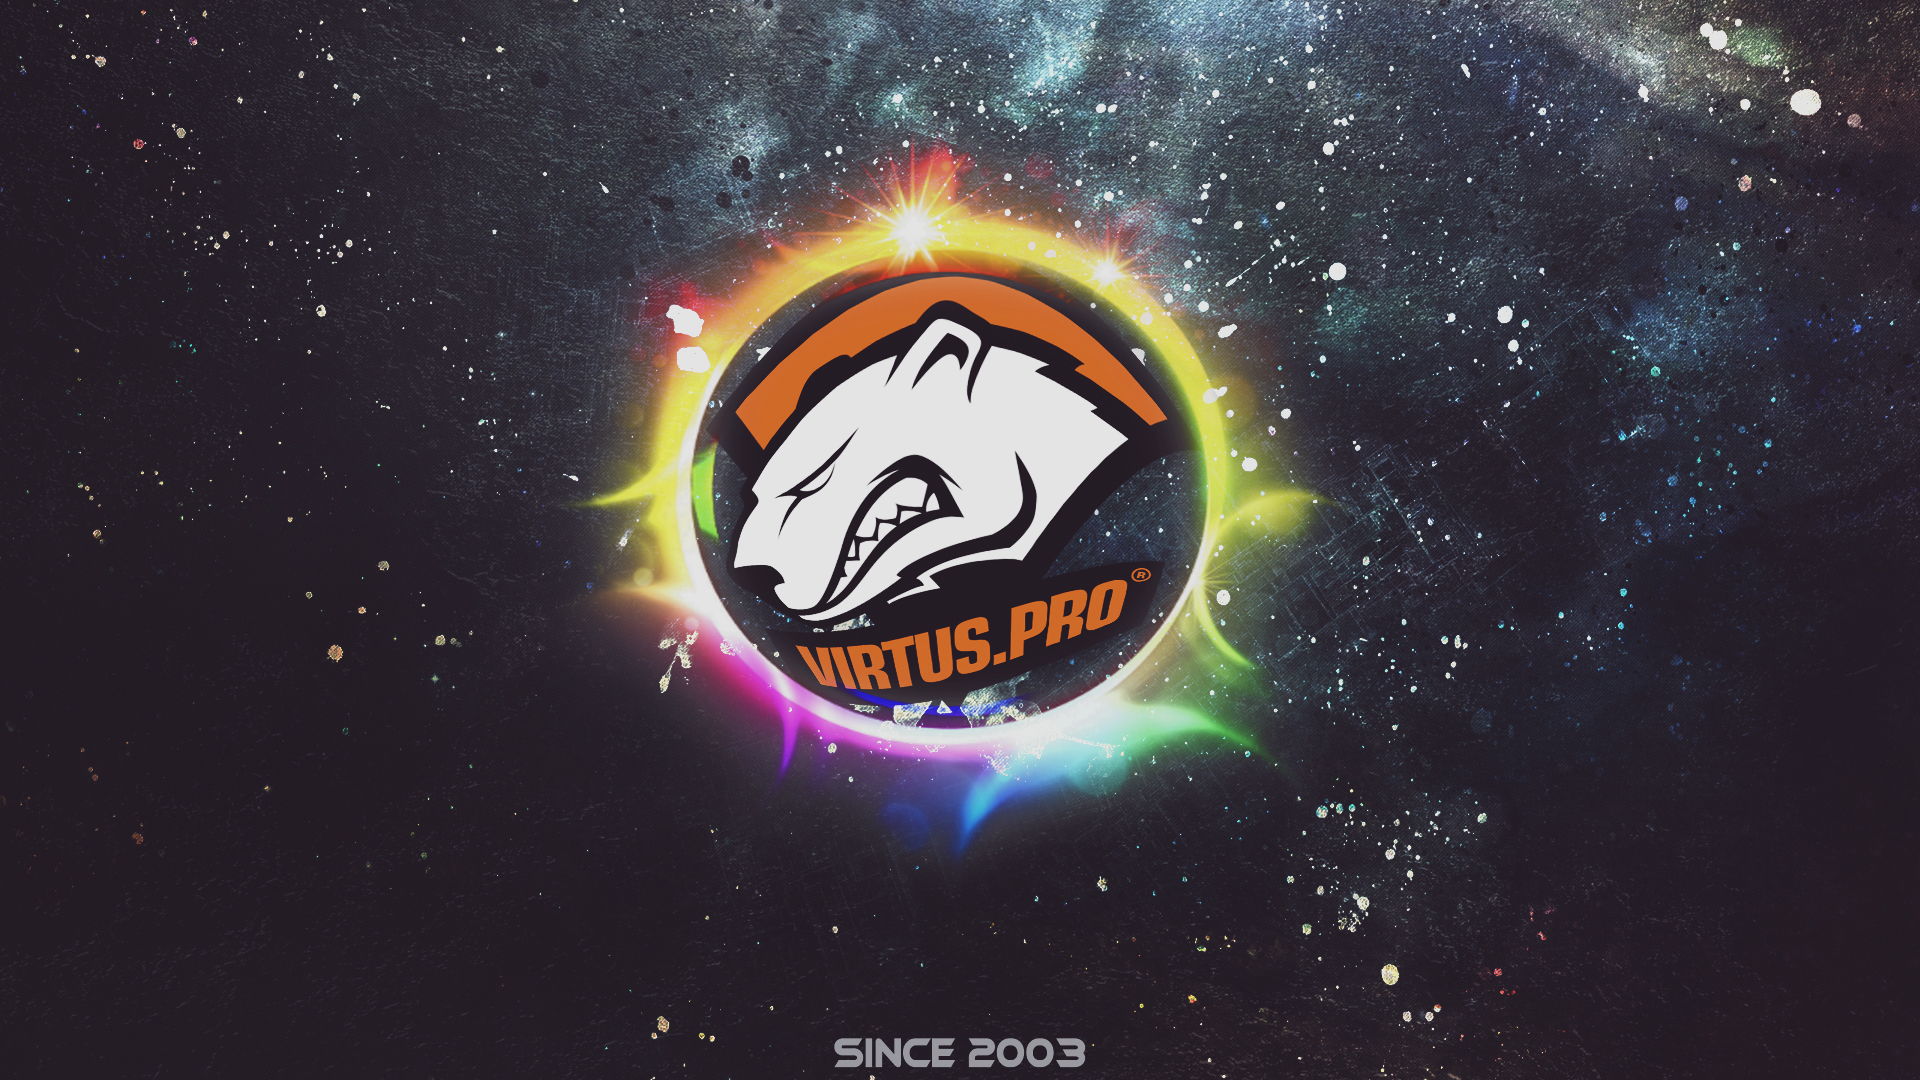 Wallpaper Virtus pro logo, gaming